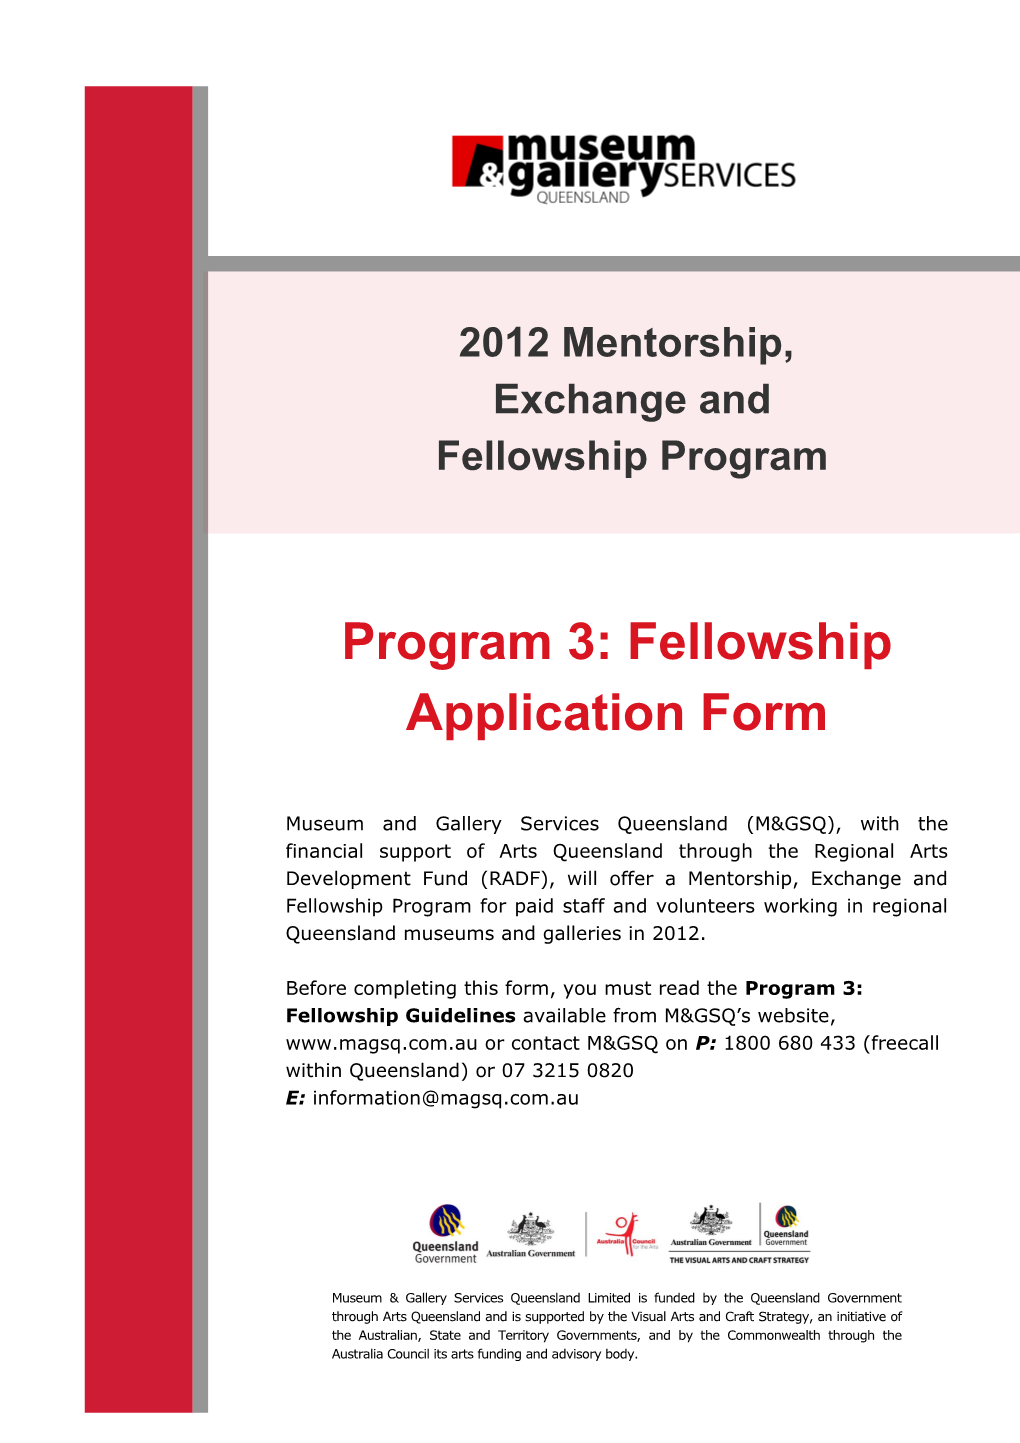 International Fellowship Programx 2 Opportunities